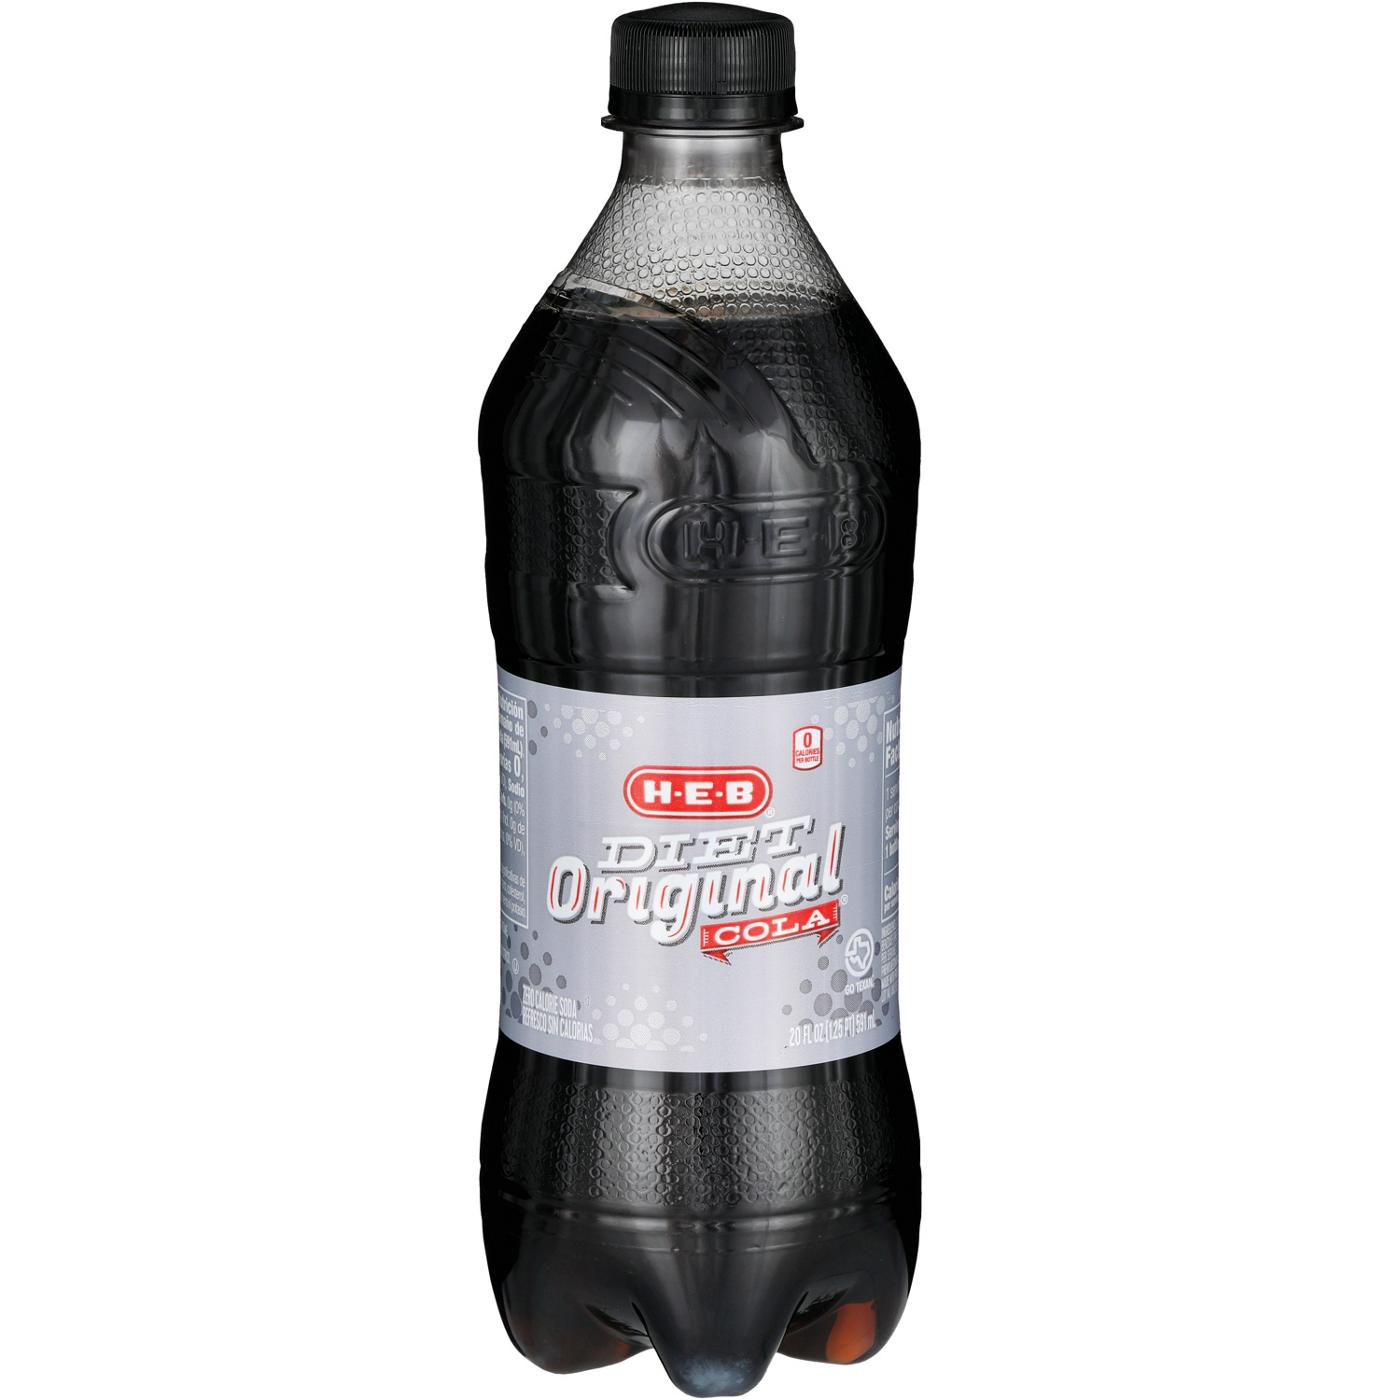 H-E-B Diet Original Cola Soda; image 2 of 2